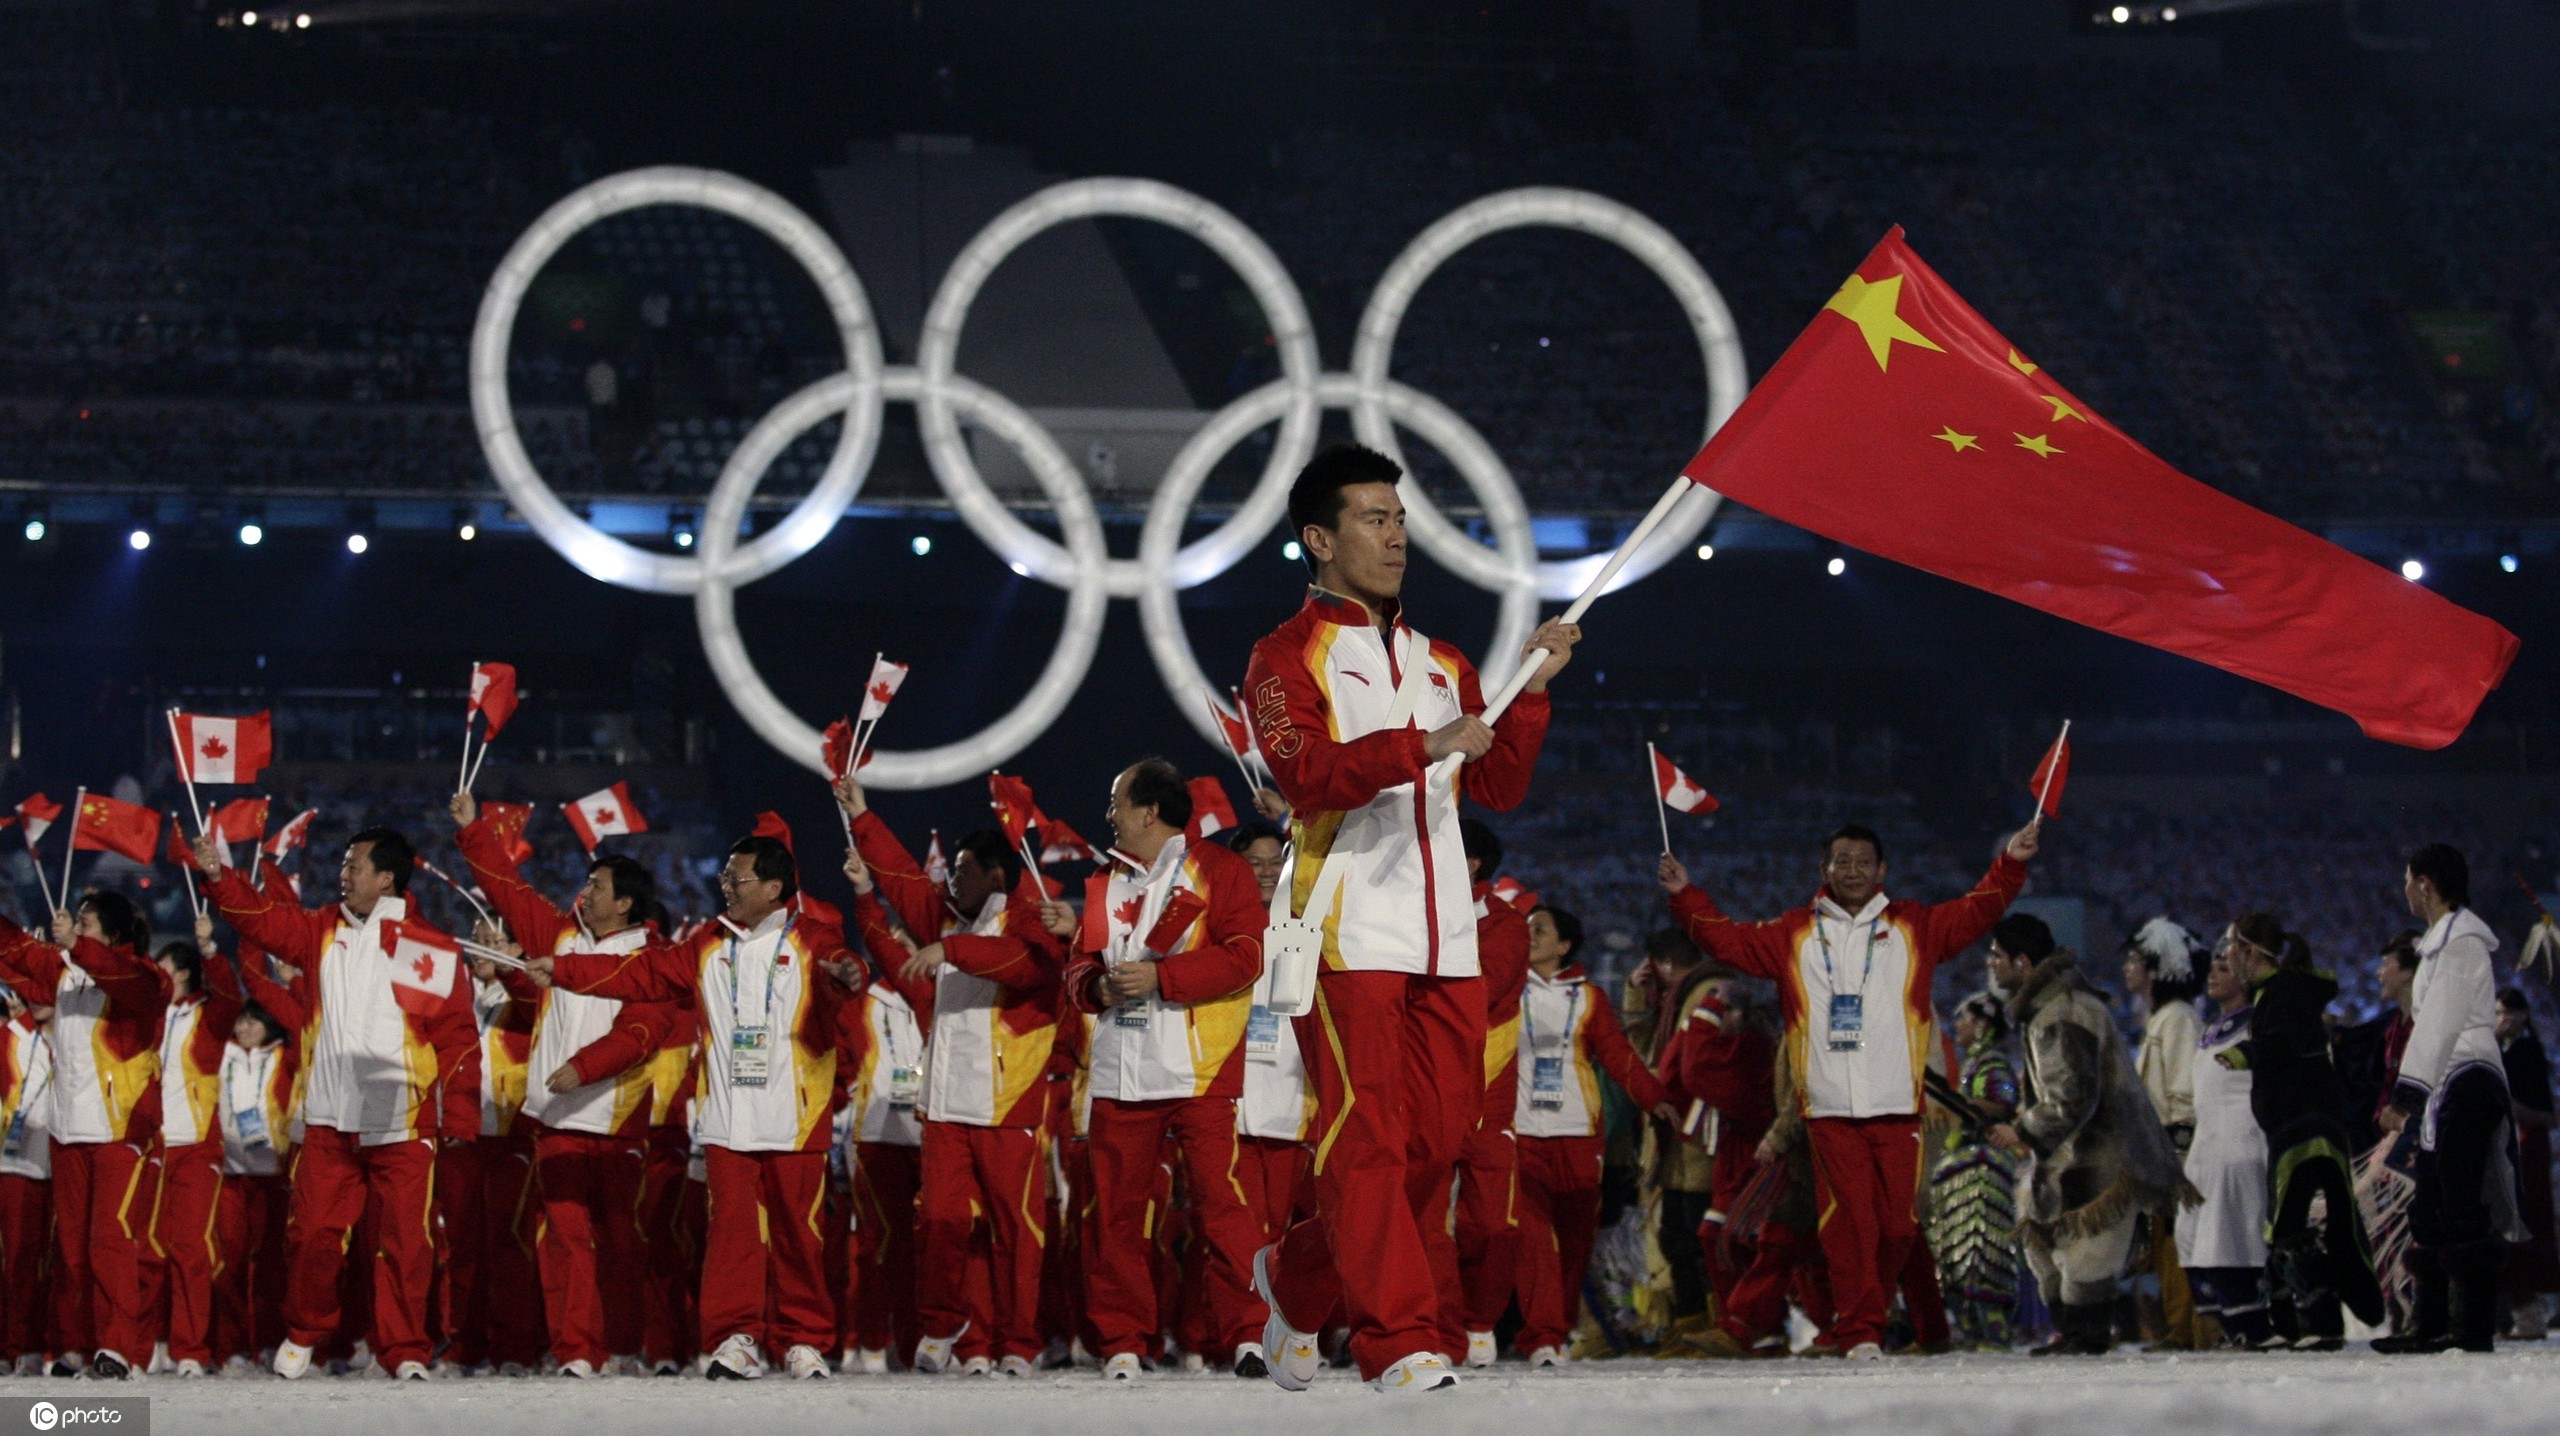 冬奥会中国队图片